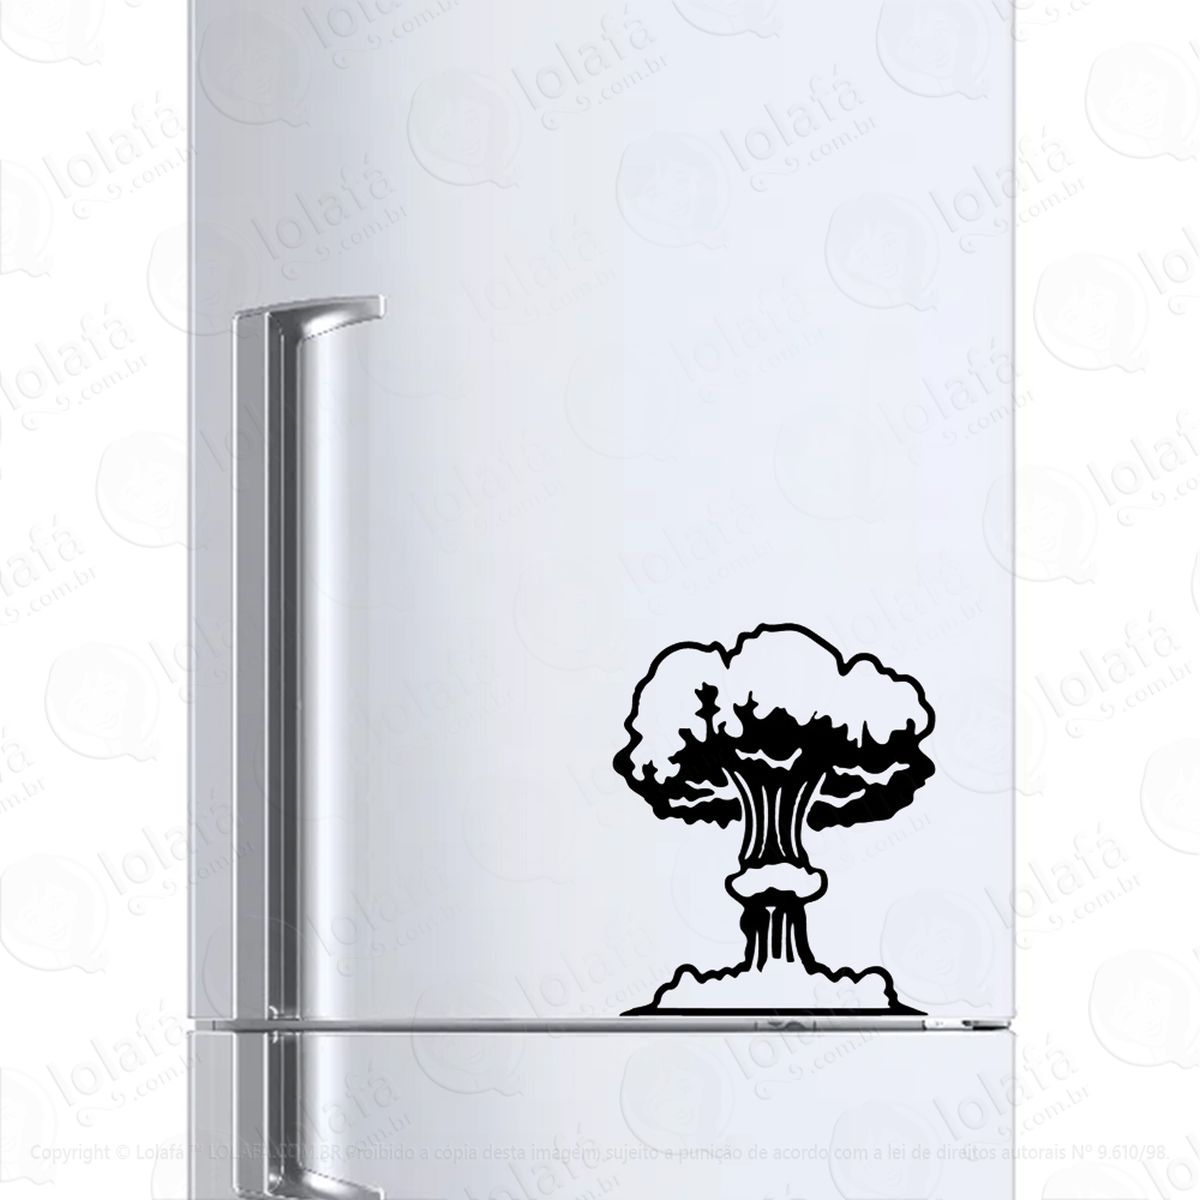 adesivo para geladeira cogumelo bomba nuclear mod:190